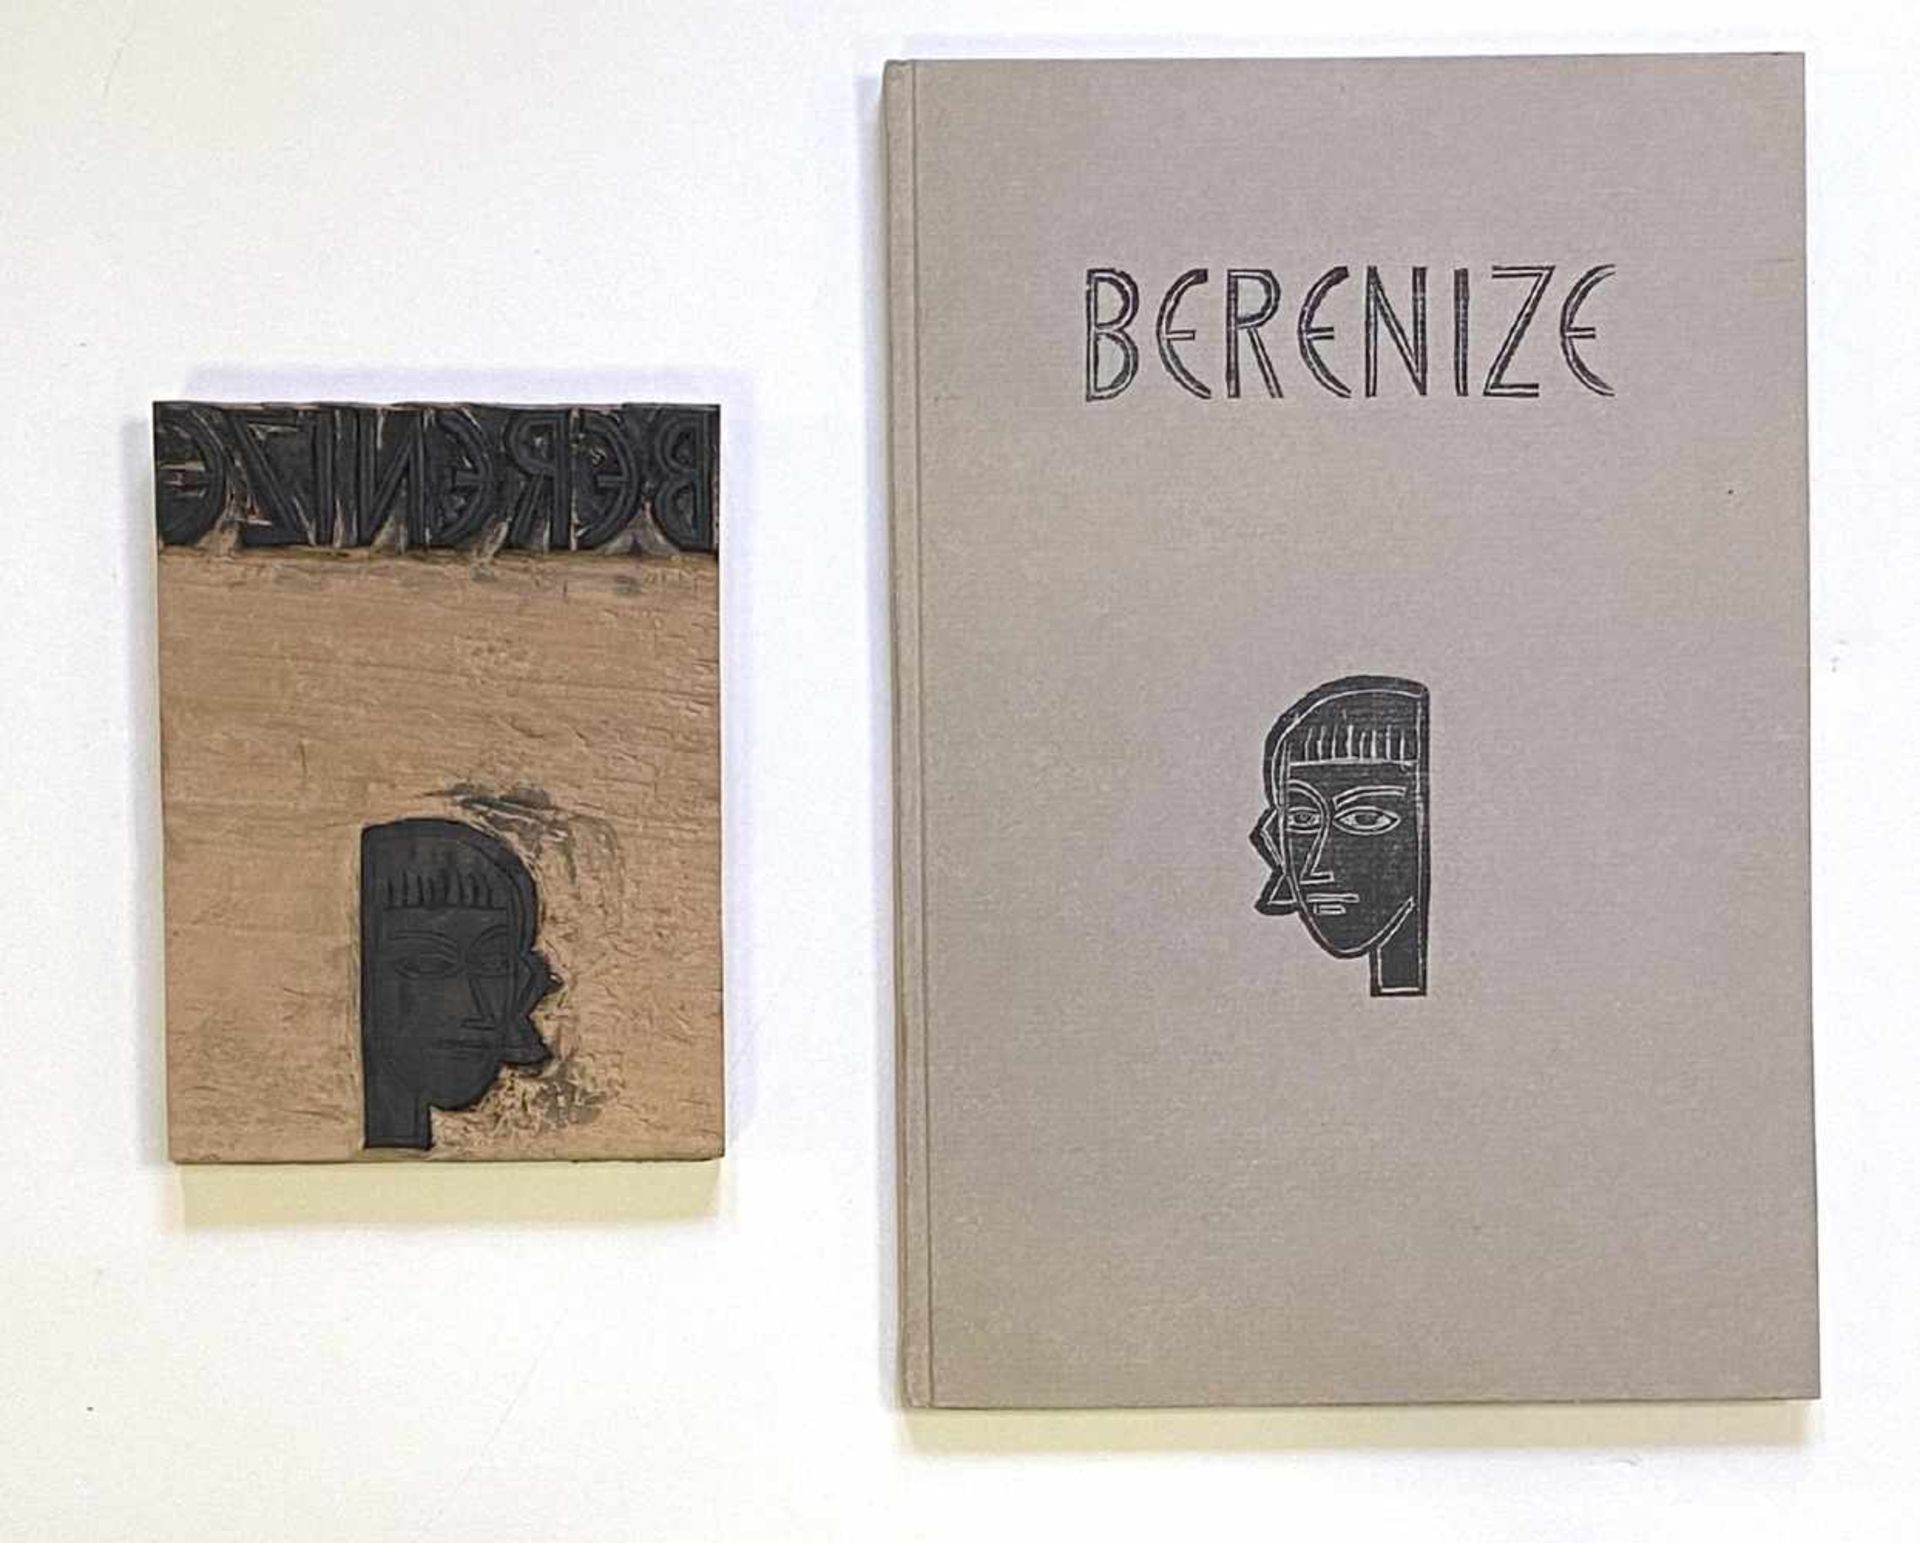 Werner Gothein, Sechs Holzschnitt - Druckplatten für Racines "Berenize"